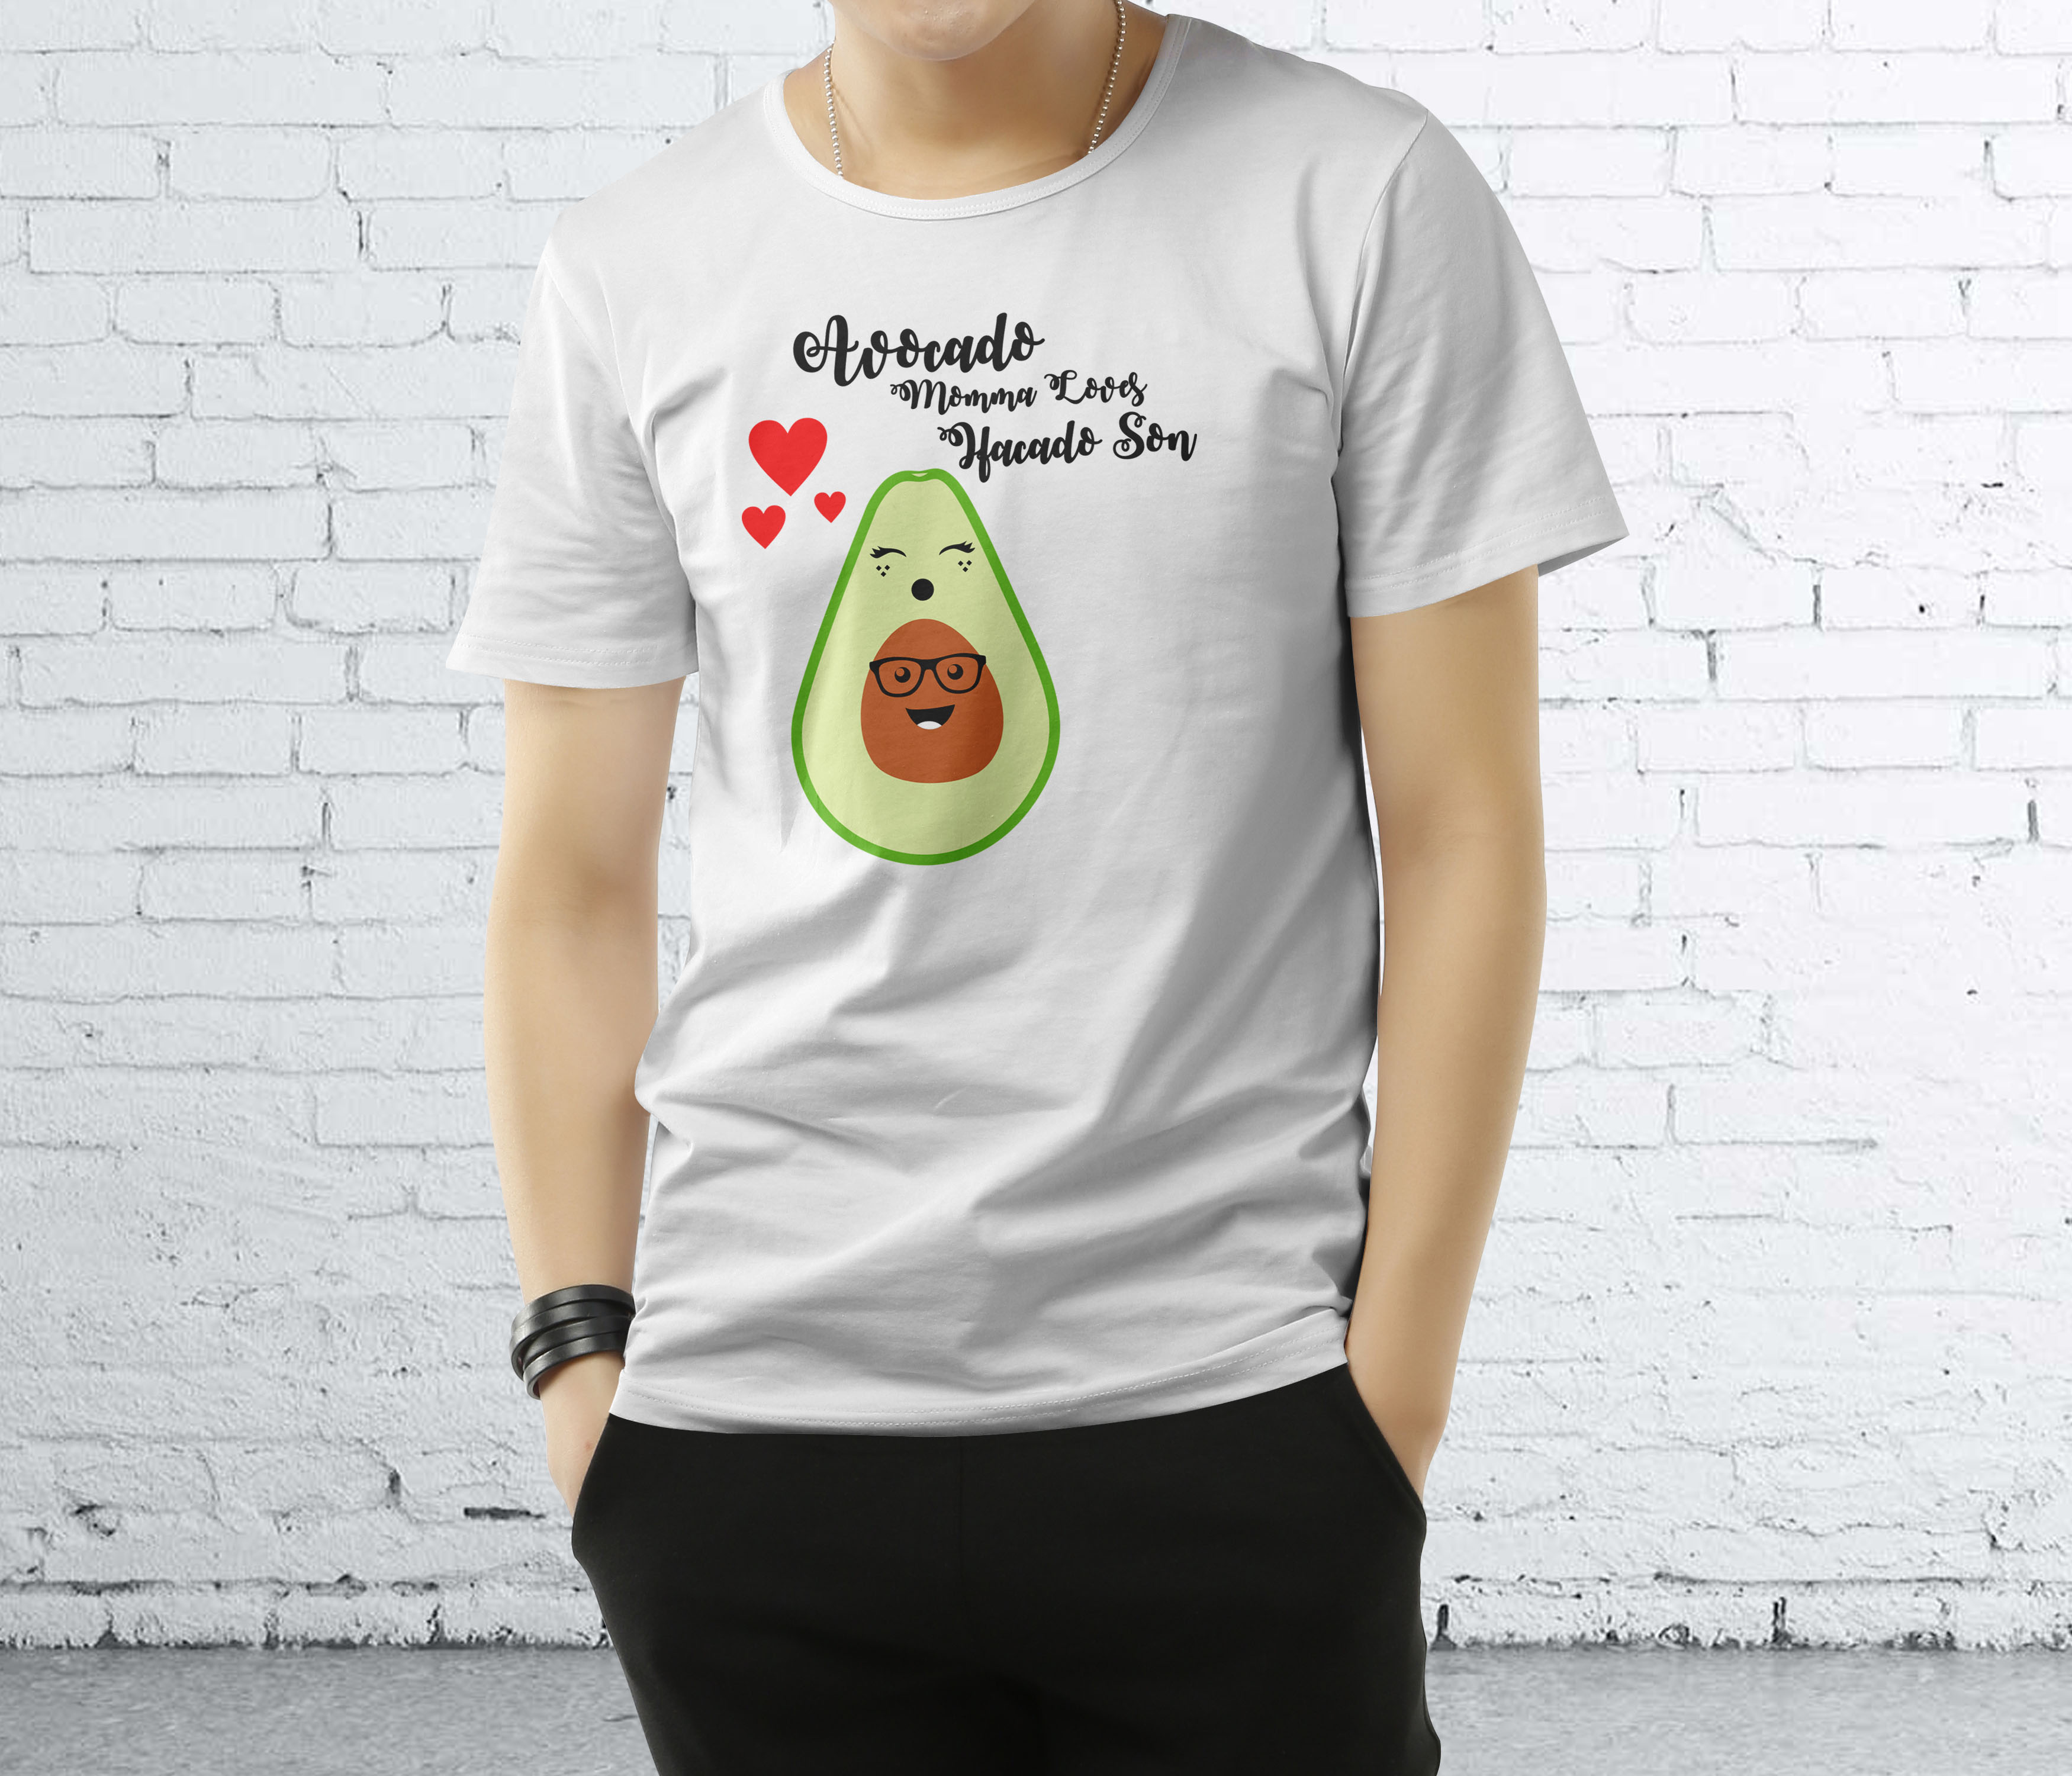 Create Amazing Custom T-shirt Design for $23 - SEOClerks